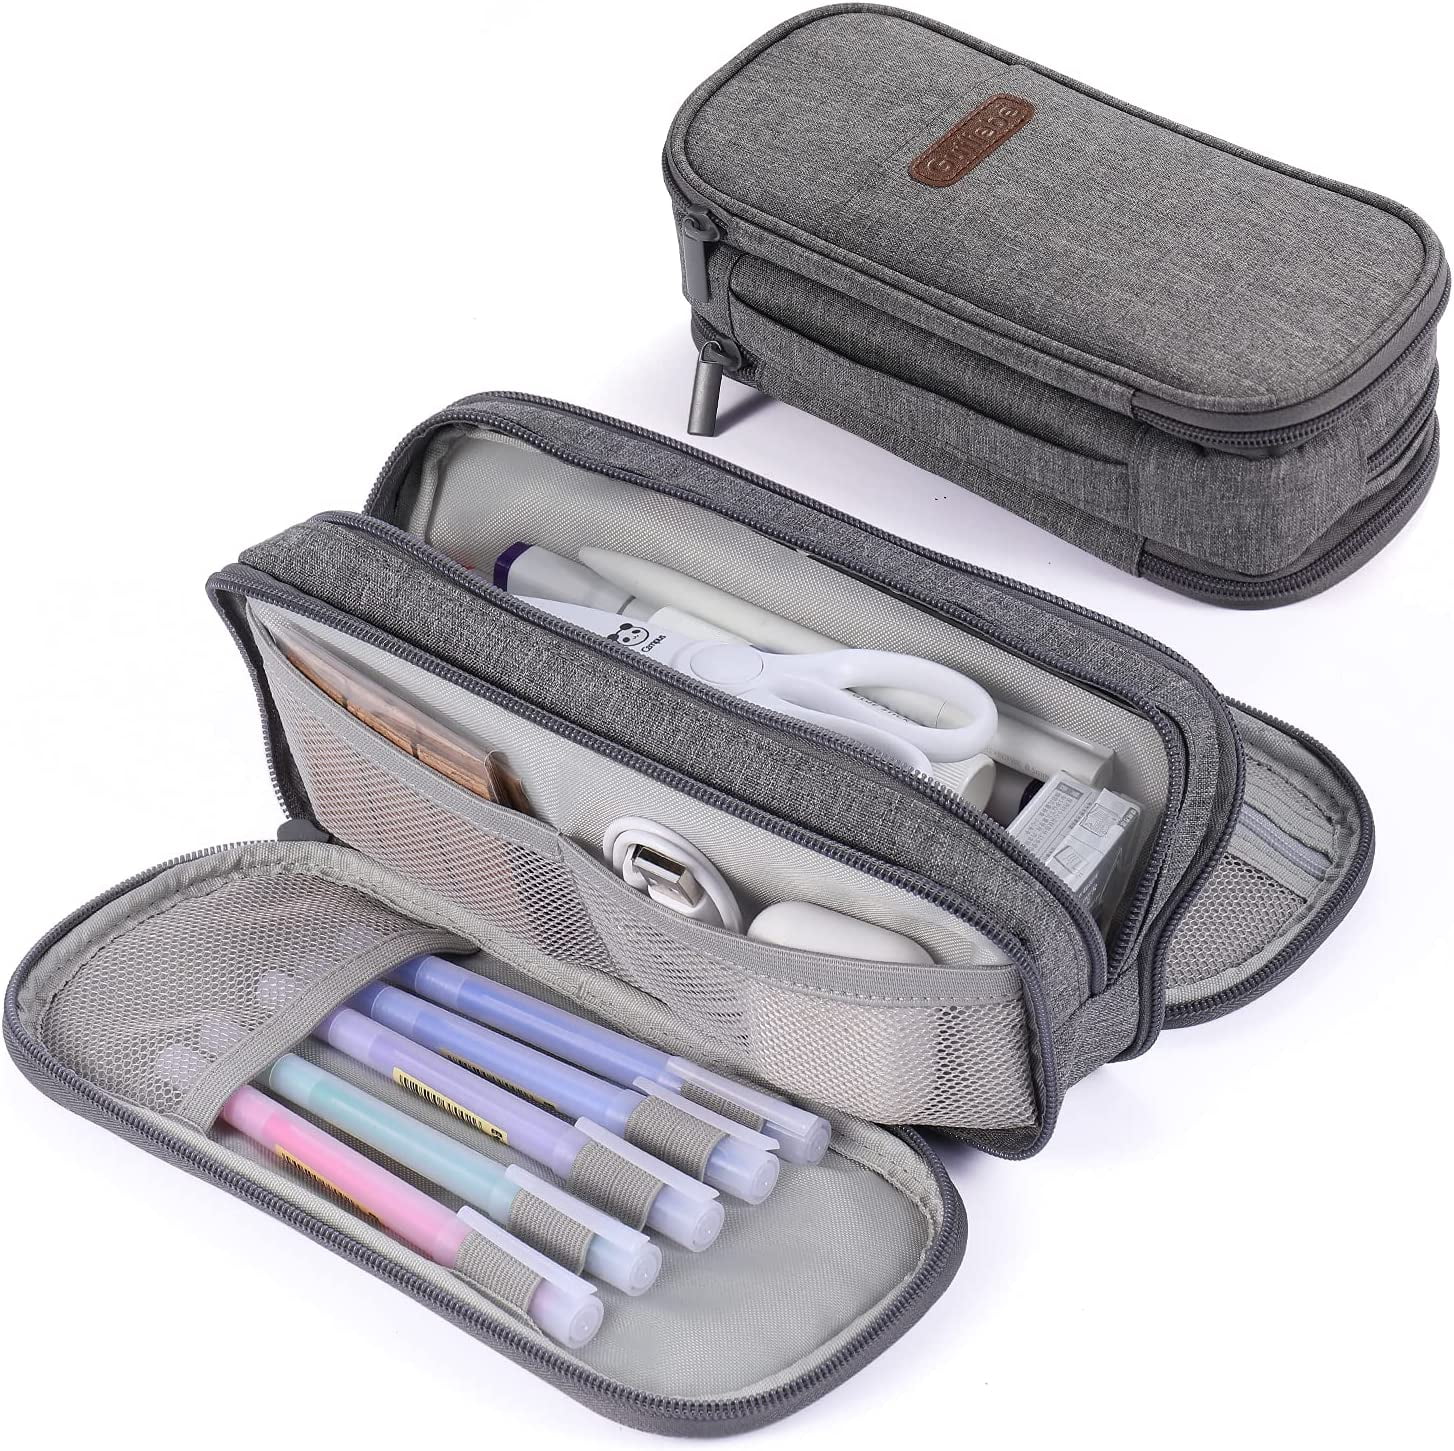 CICIMELON Pencil Case Large Capacity Pencil Pouch Handheld Pen Bag for  Office School Girl Boy Men Women (Purple)